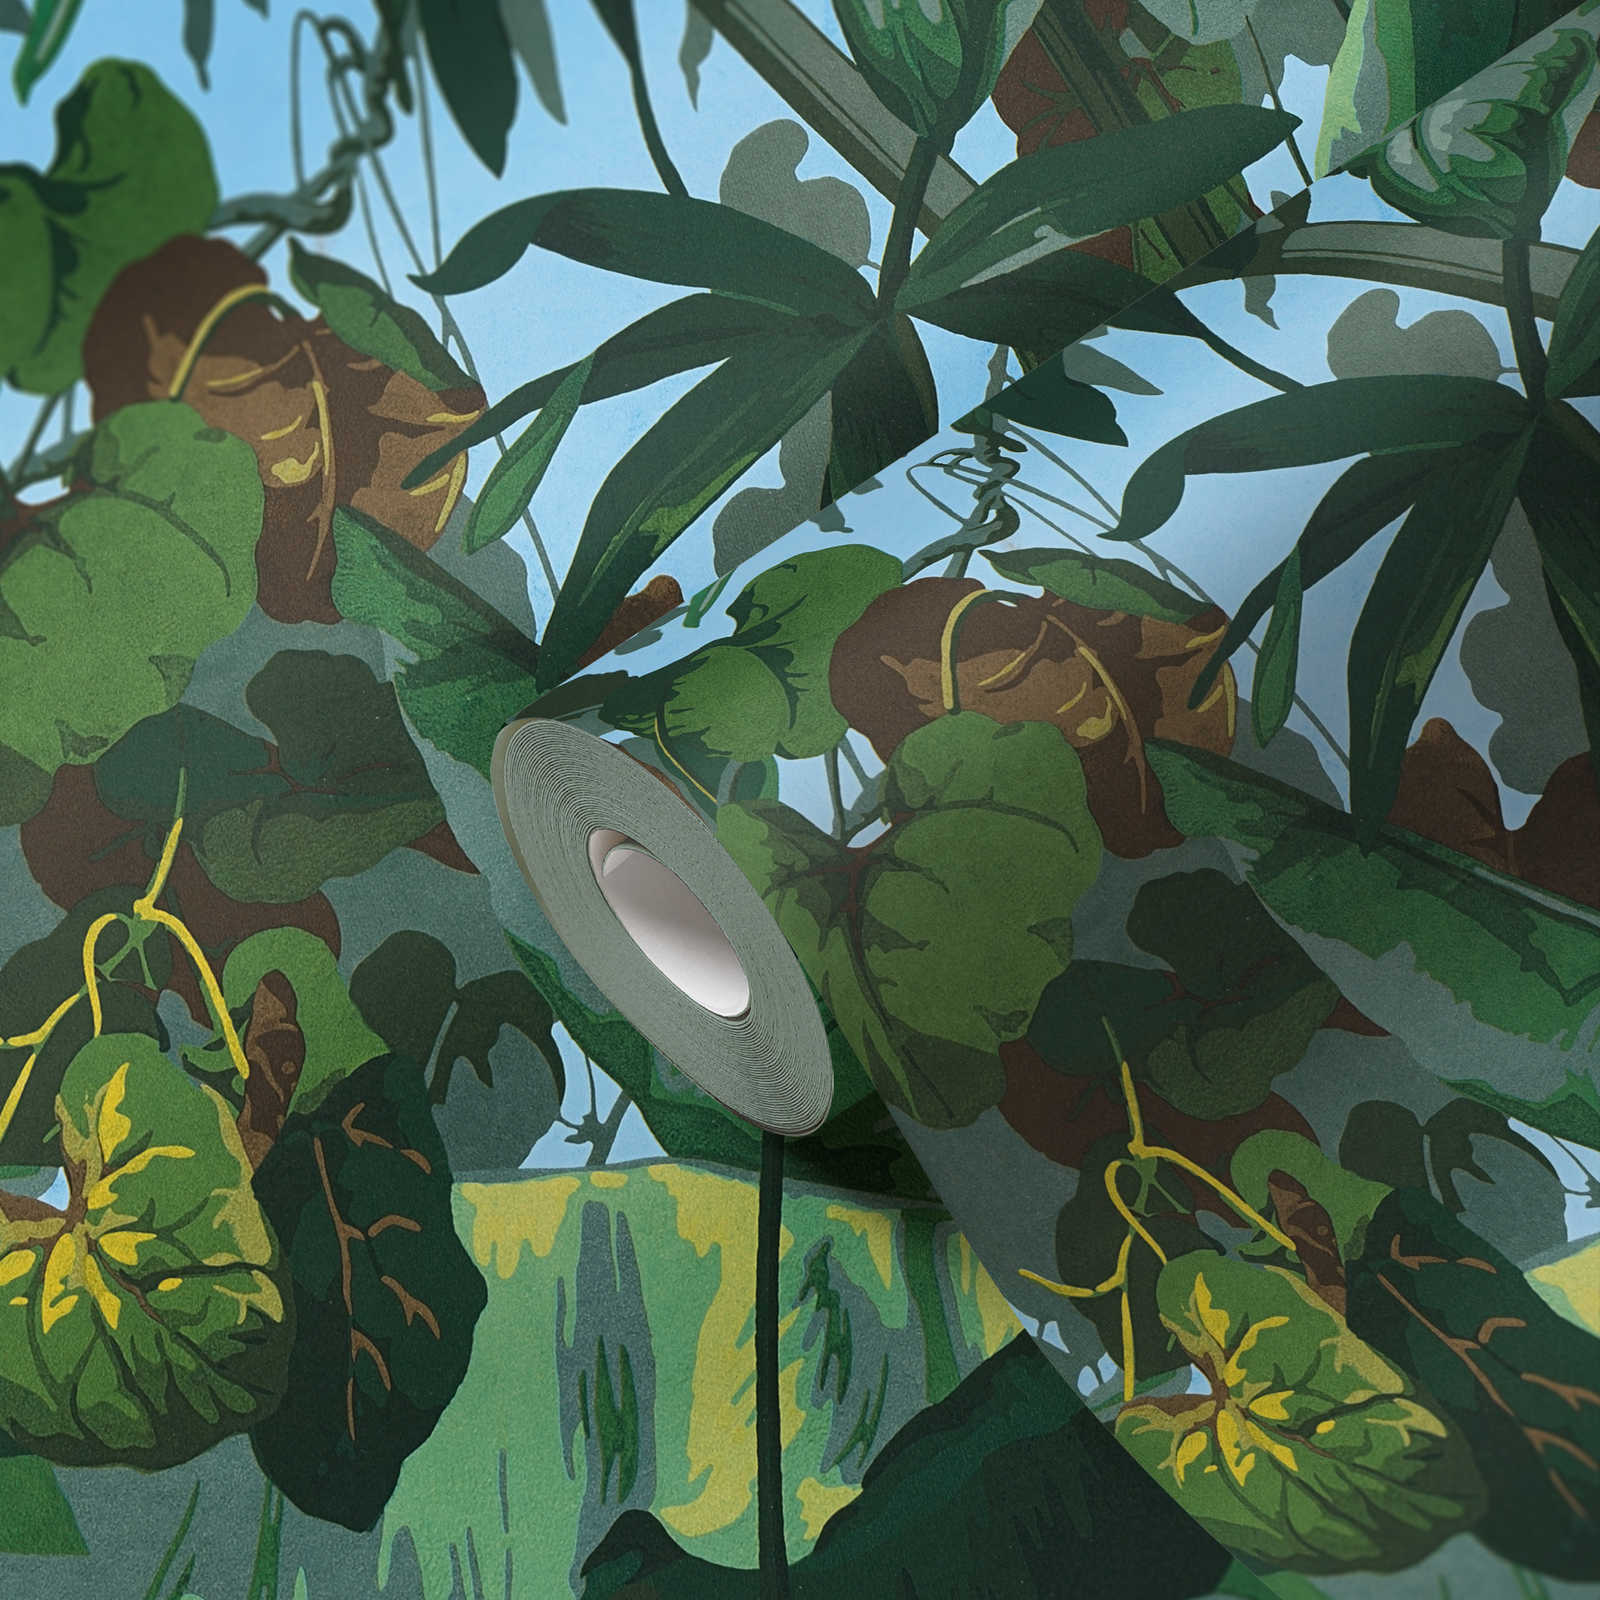             Papel pintado autoadhesivo | Papel pintado selva con bosque de hojas - verde, azul, amarillo
        